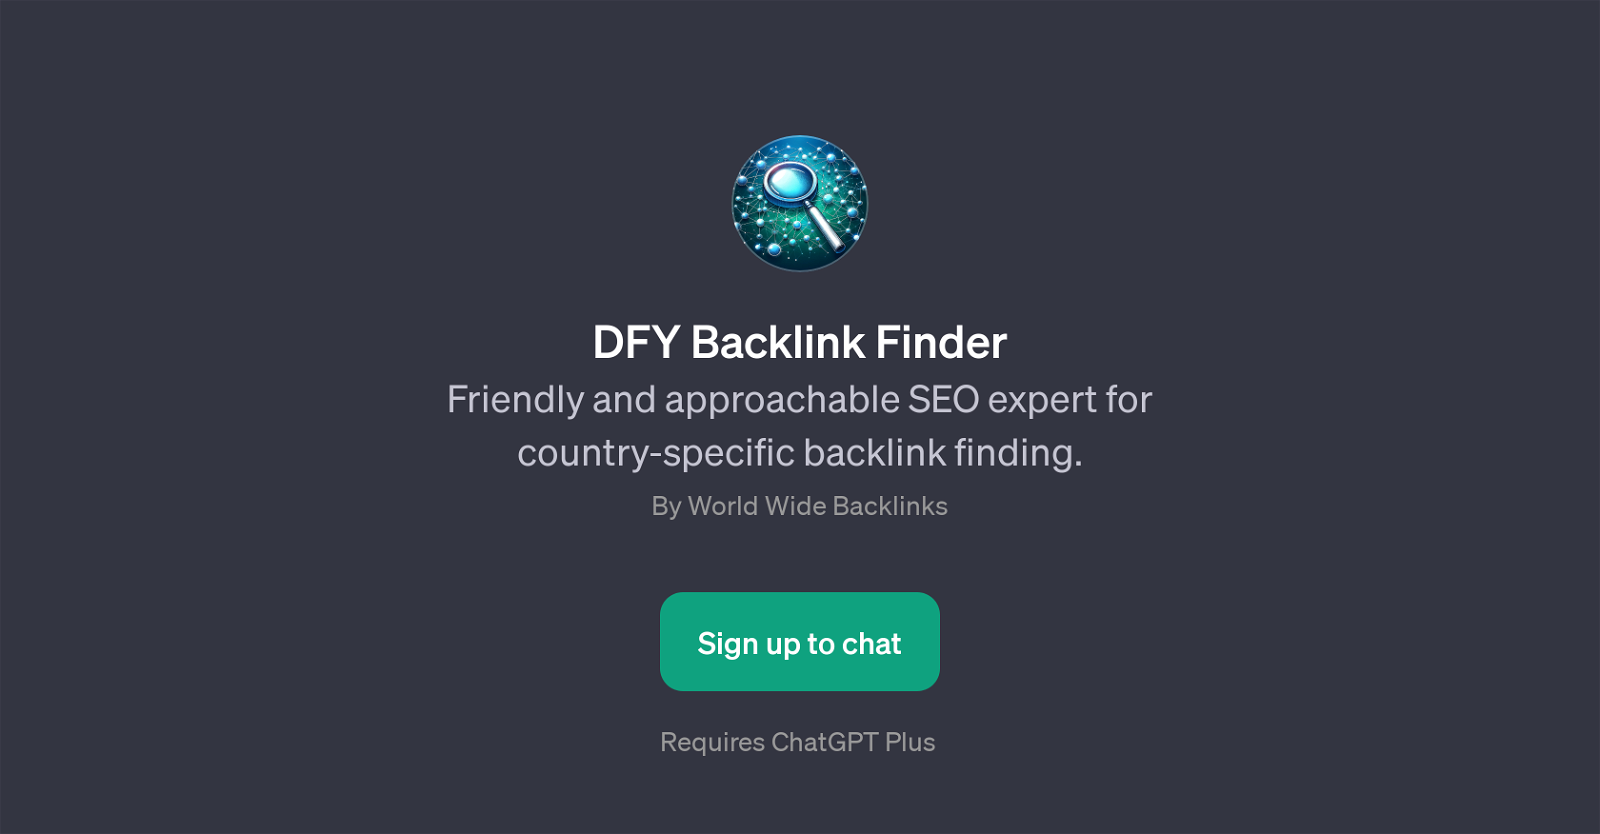 DFY Backlink Finder website